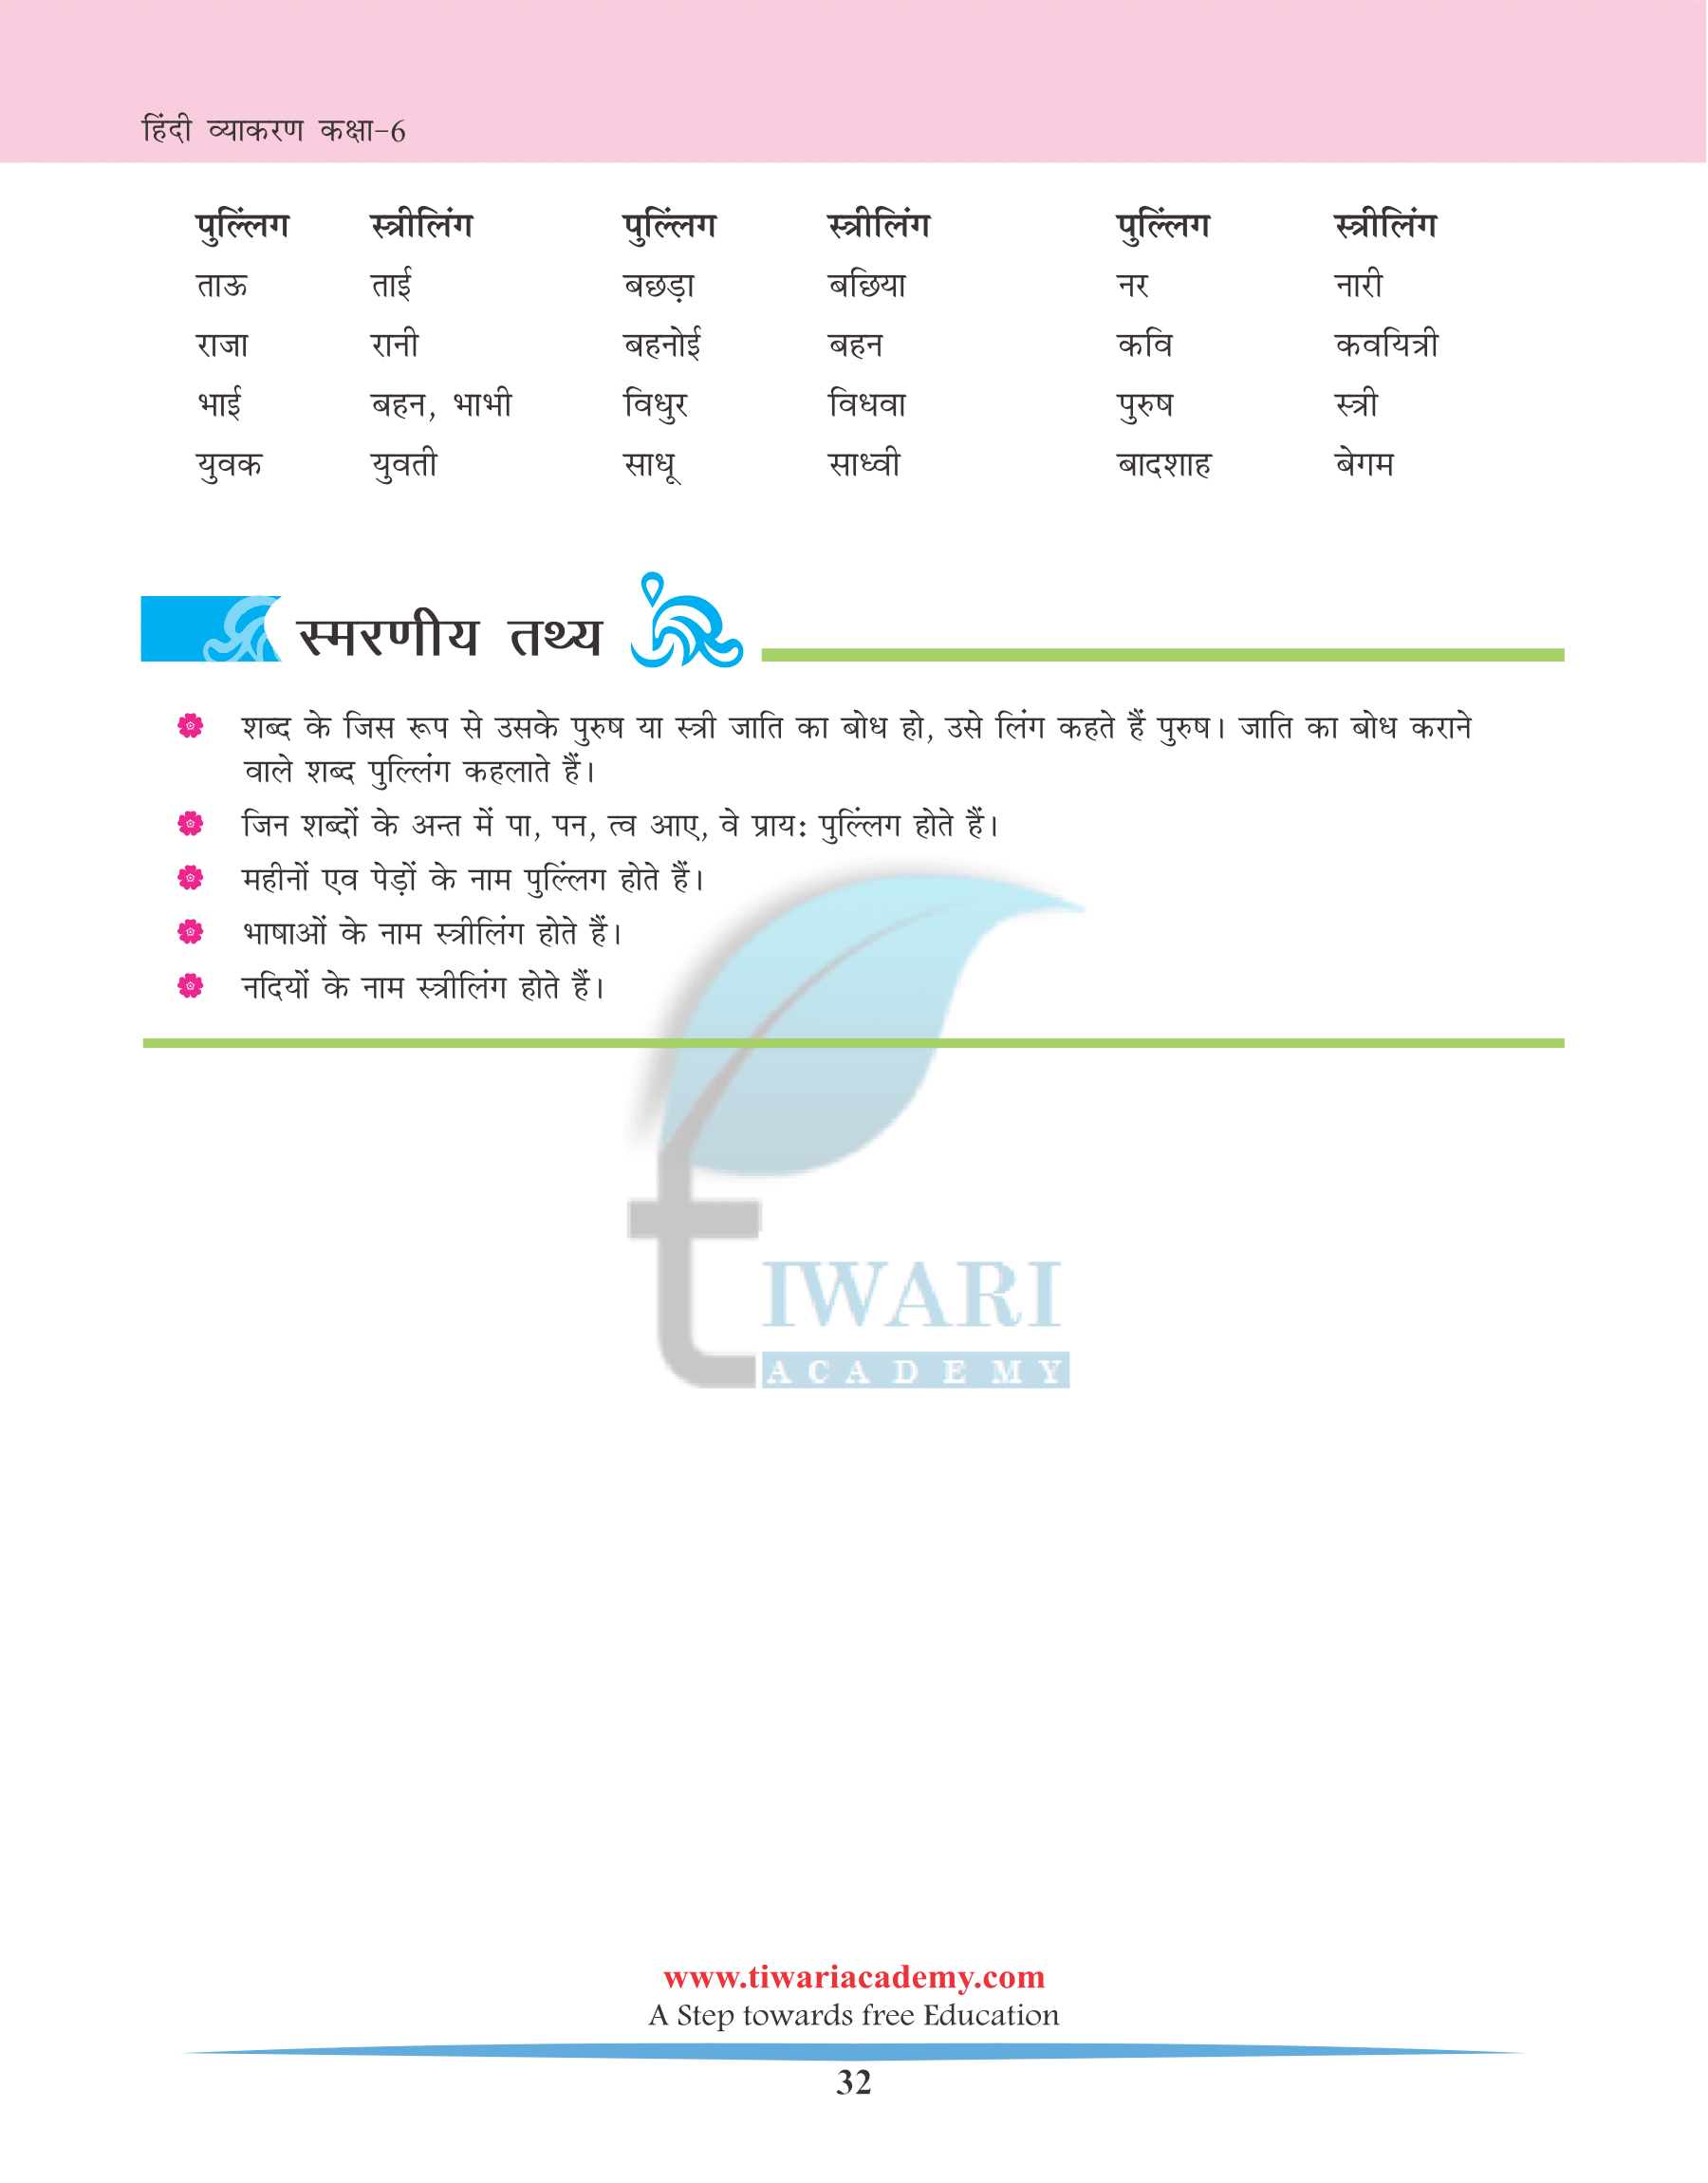 कक्षा 6 के लिए हिन्दी व्याकरण पाठ 6 लिंग तथा उसके भेद